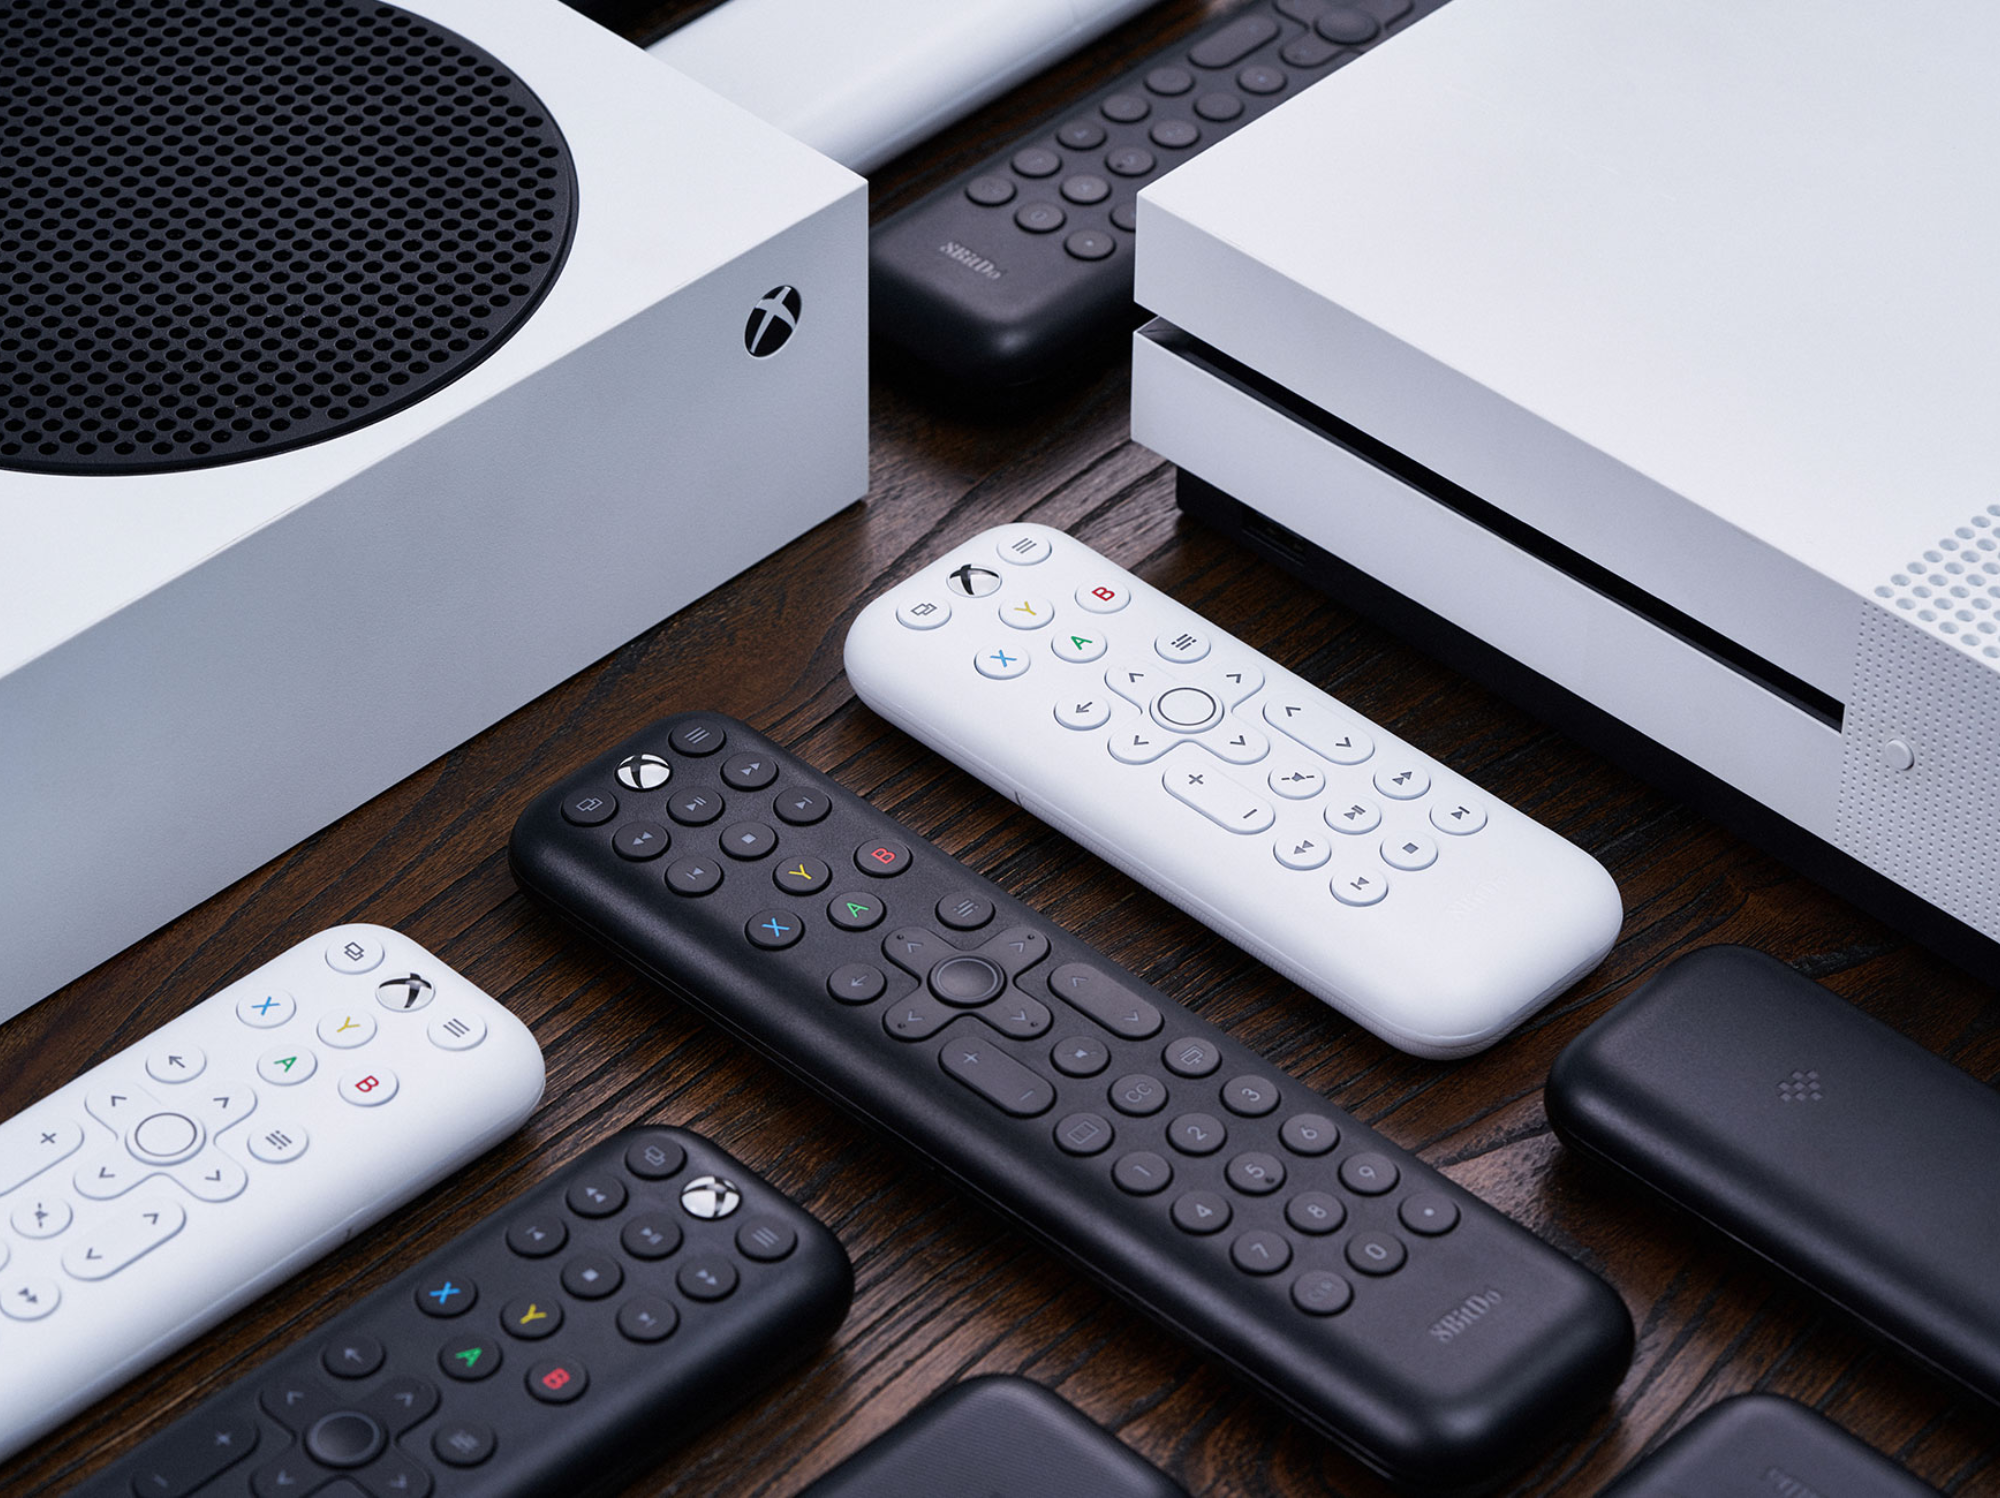 8BitDo announces two Xbox media remotes